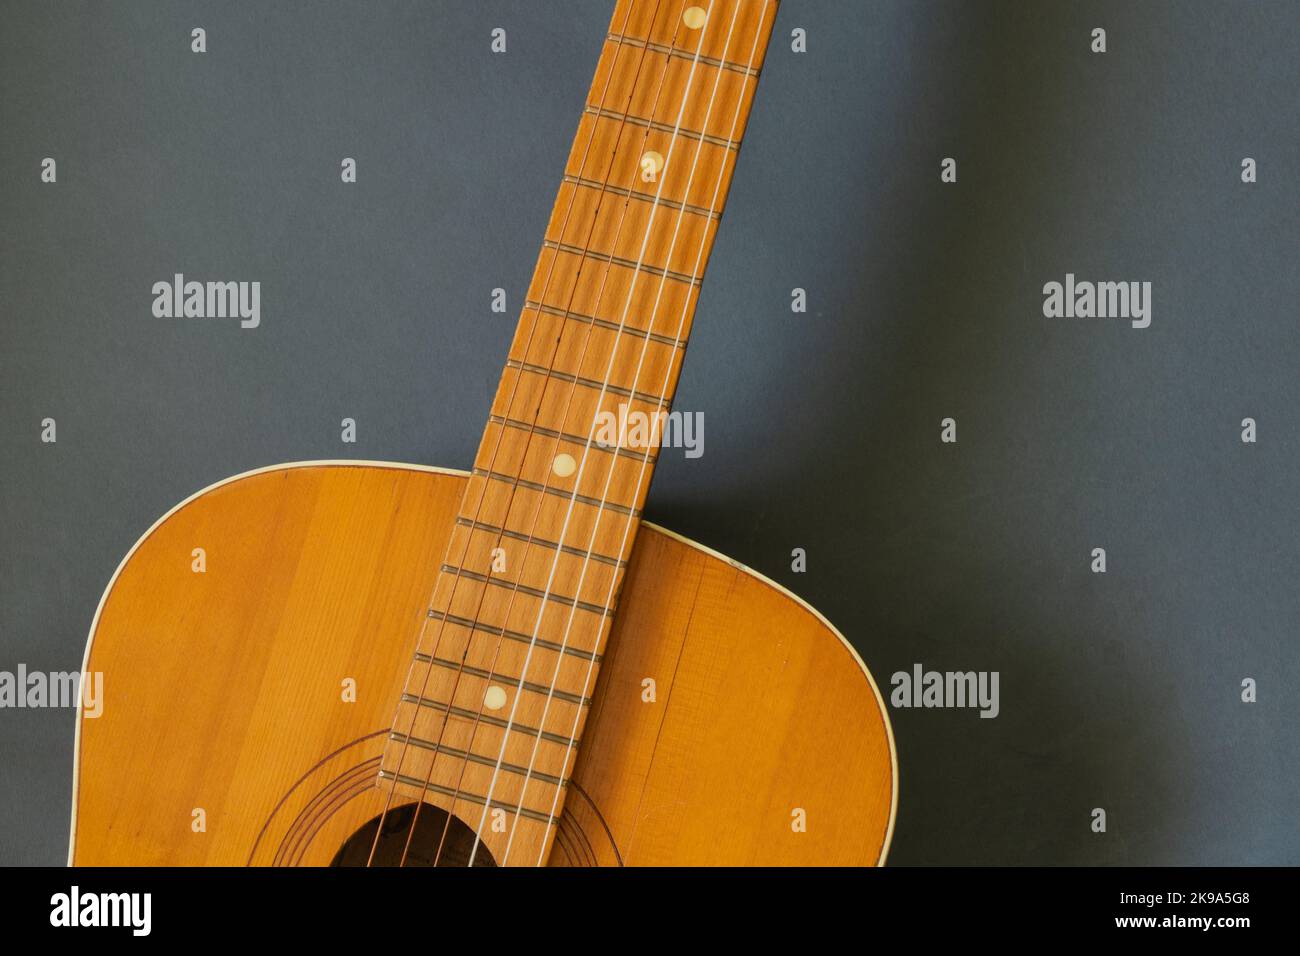 chitarra marrone in legno su sfondo scuro Foto Stock